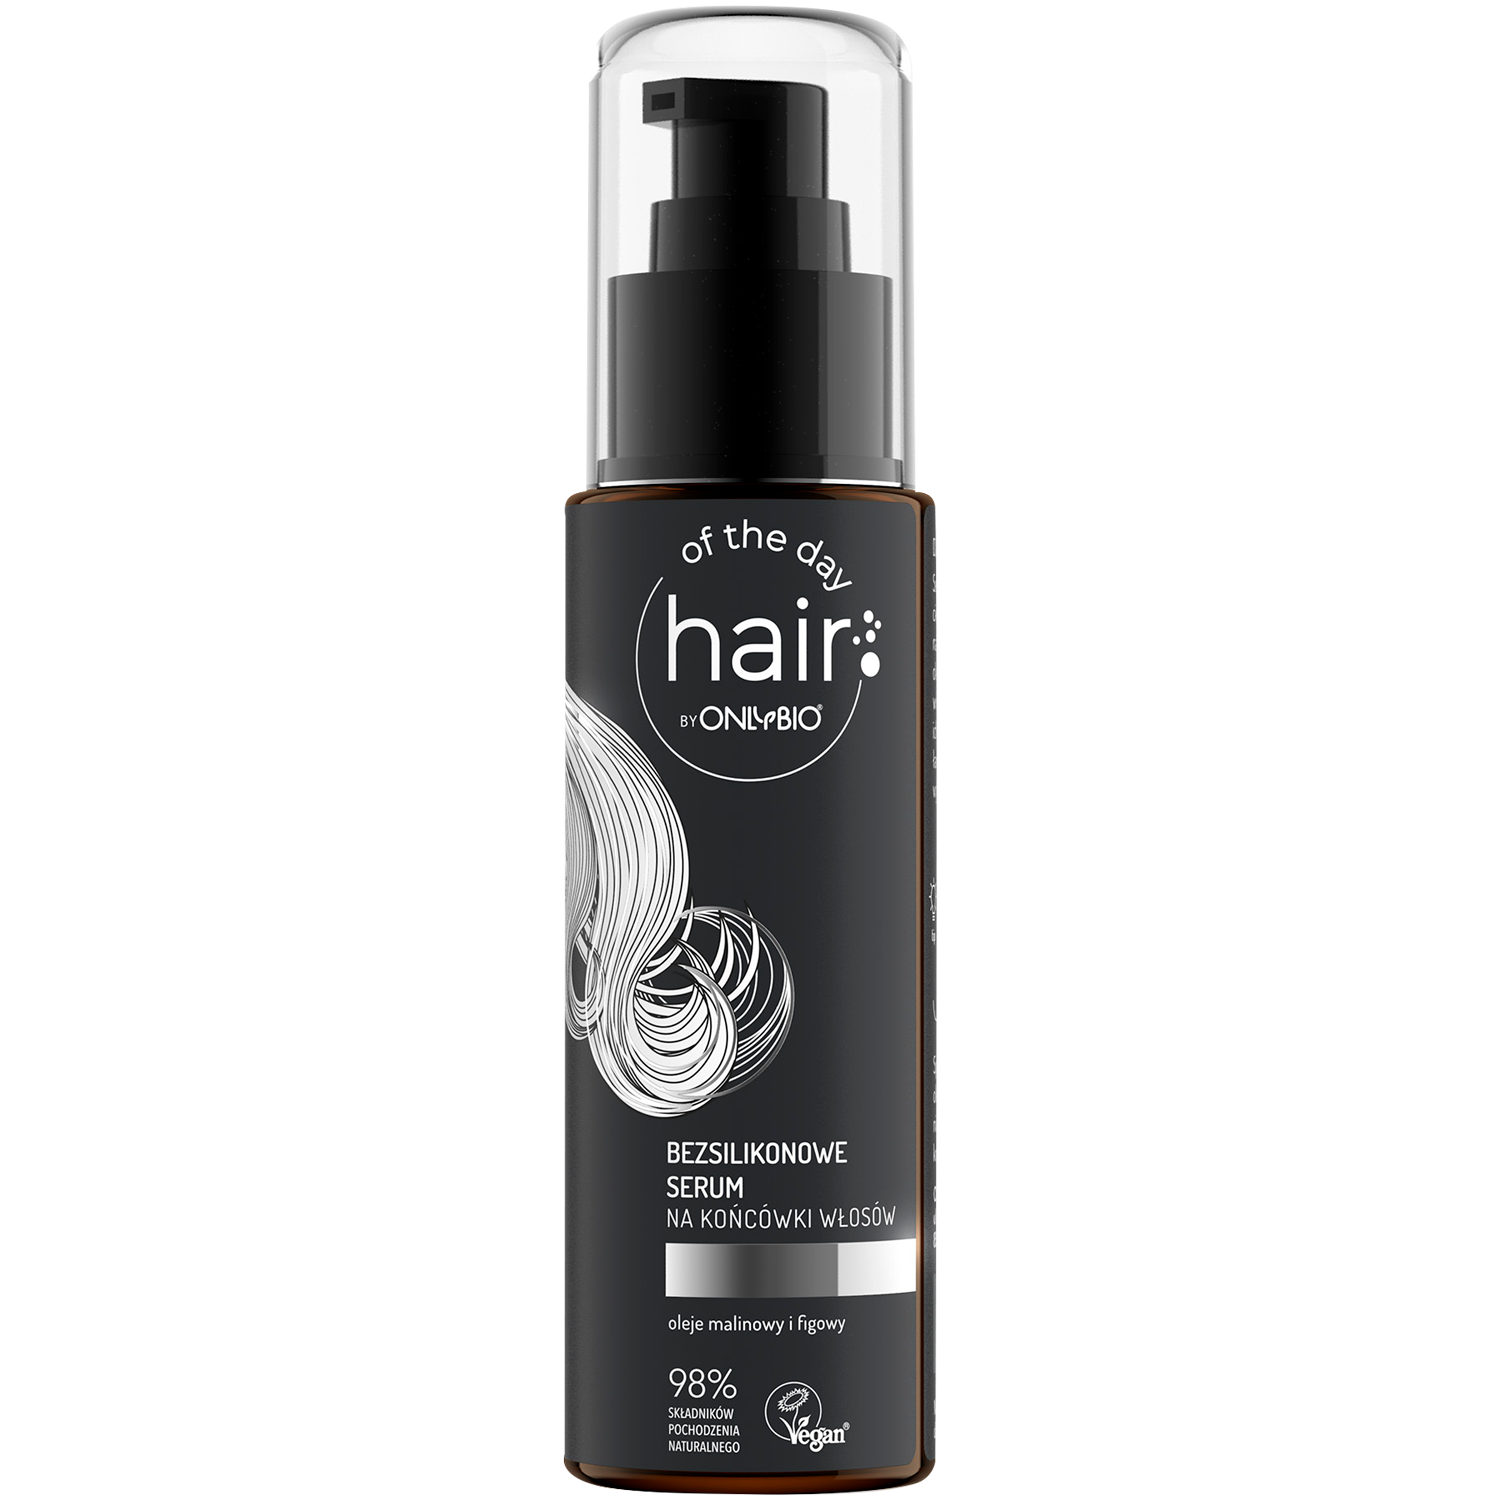 Hair Of The Day By Only Bio bezsilikonowe serum na końcówki włosów, 80 ml |  hebe.pl